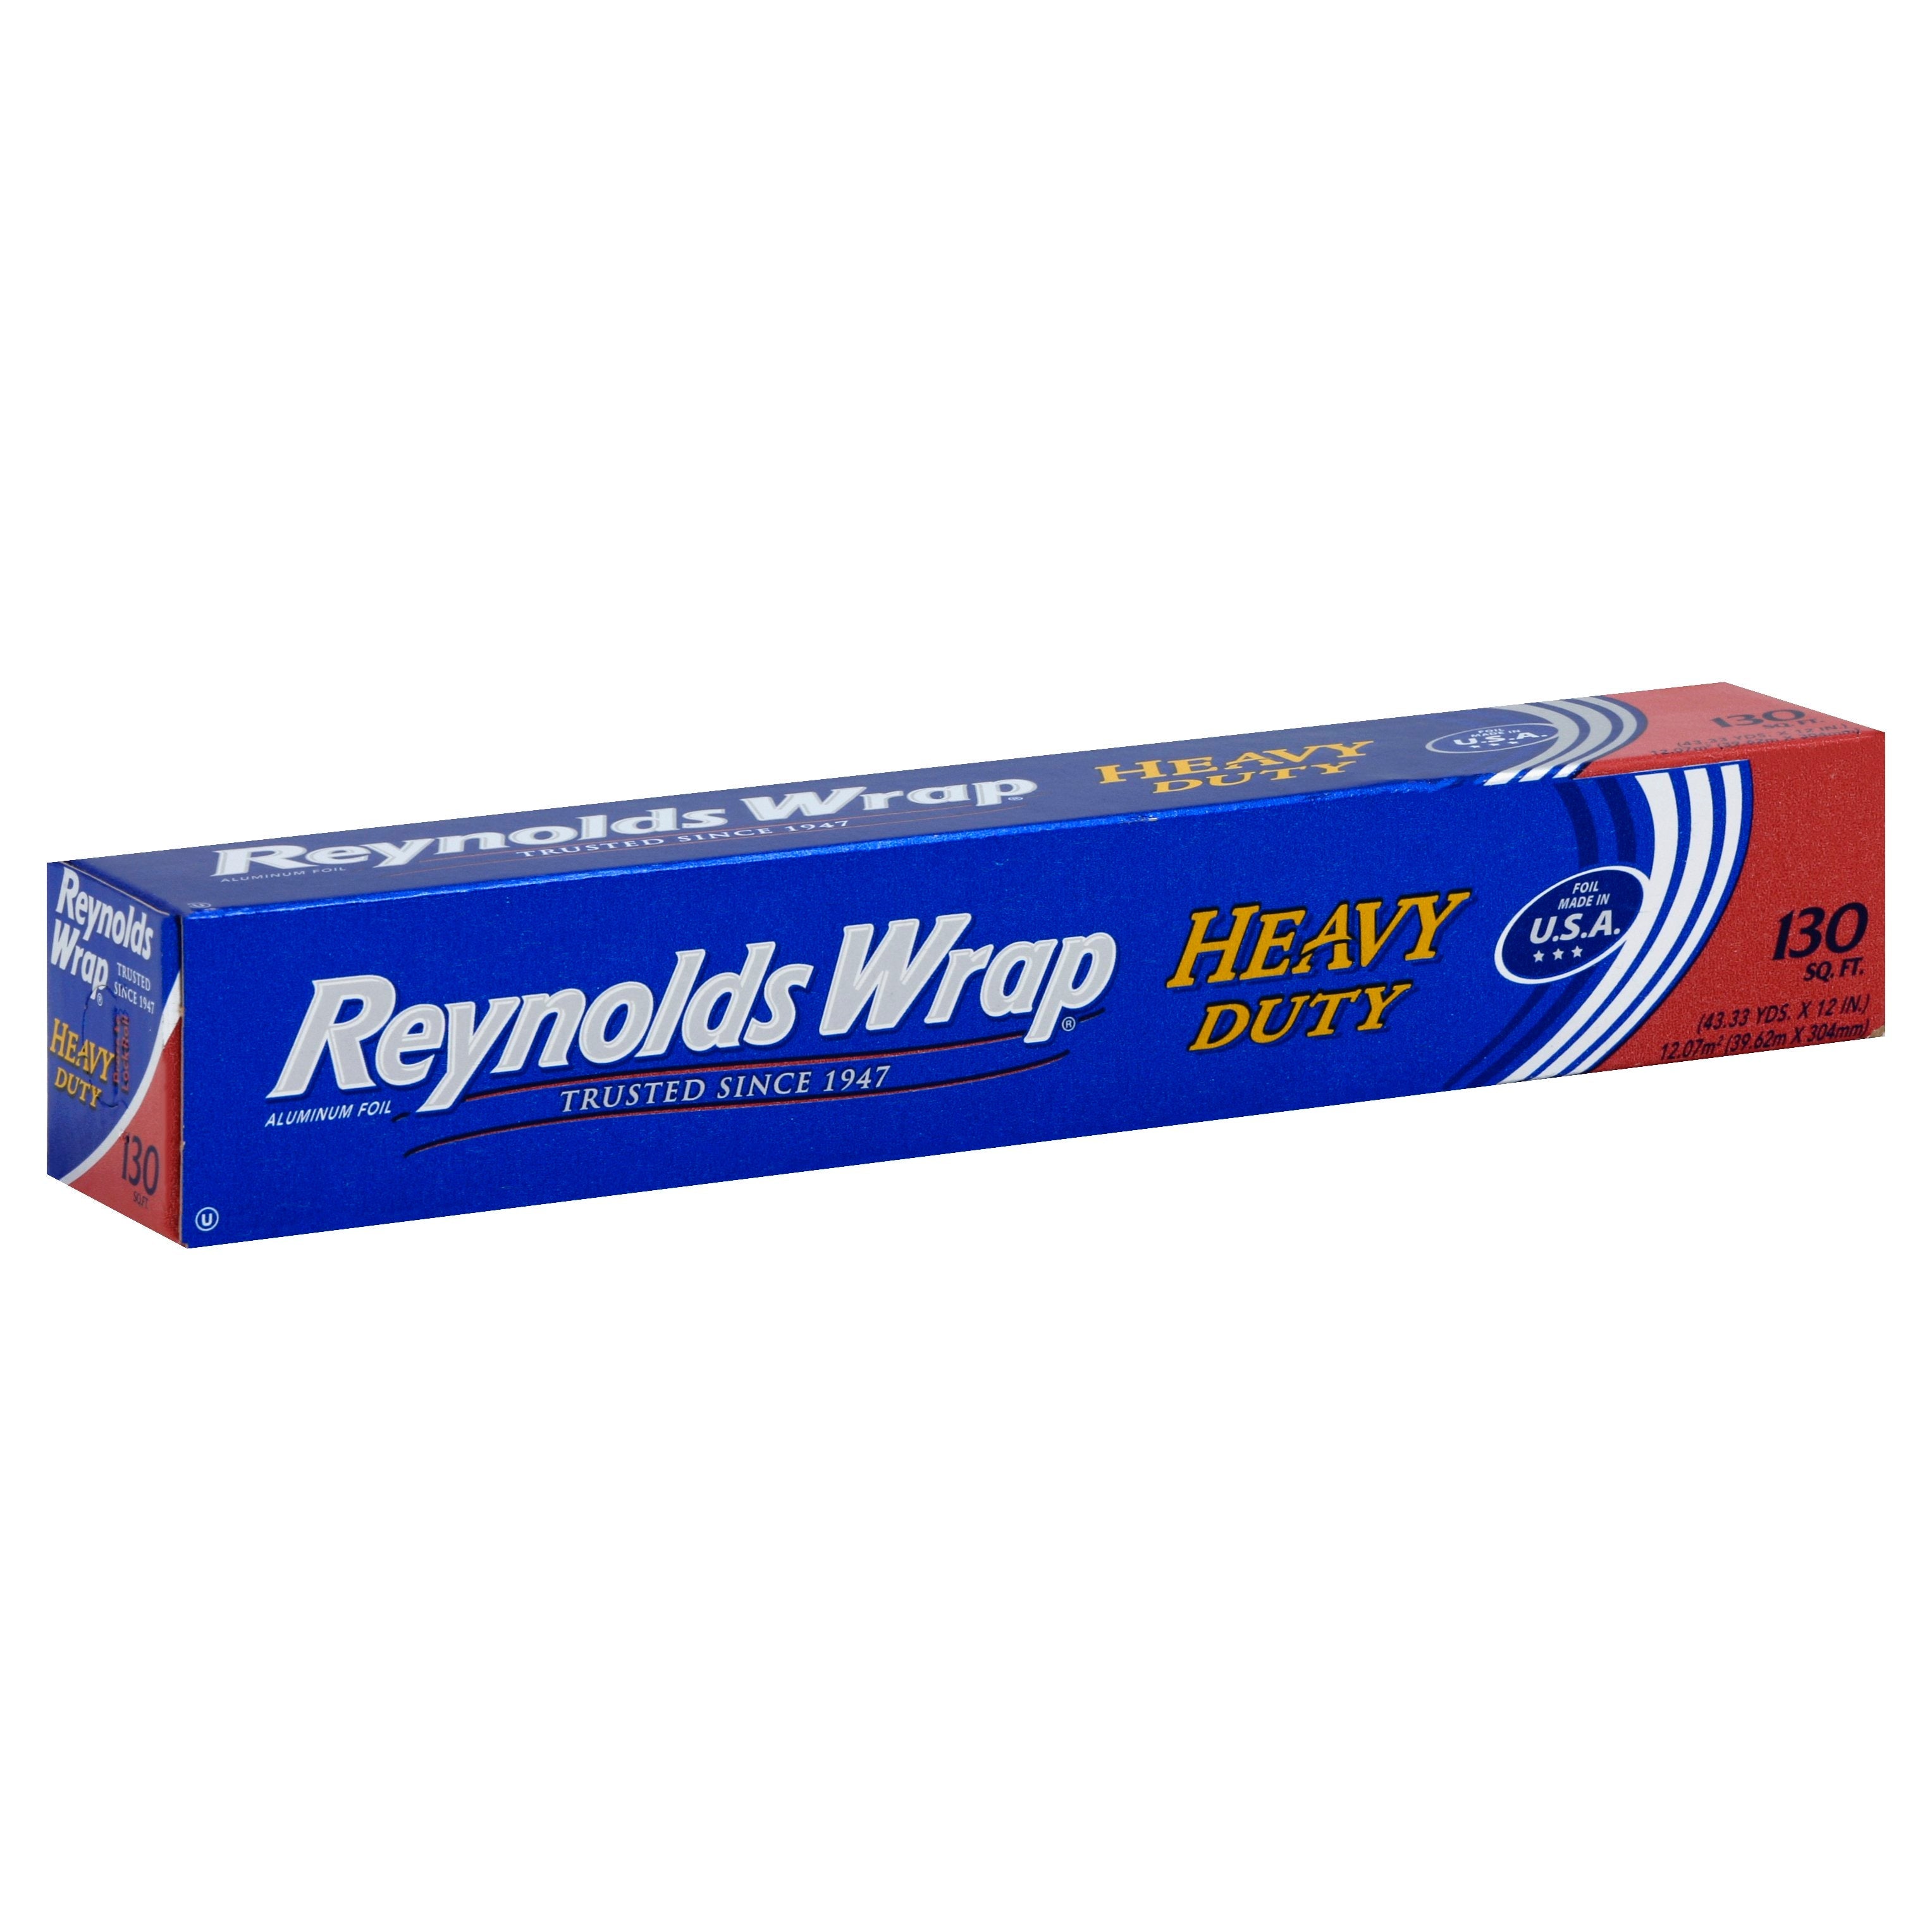 Reynolds Wrap 130 Sq. Ft. Non Stick Foil